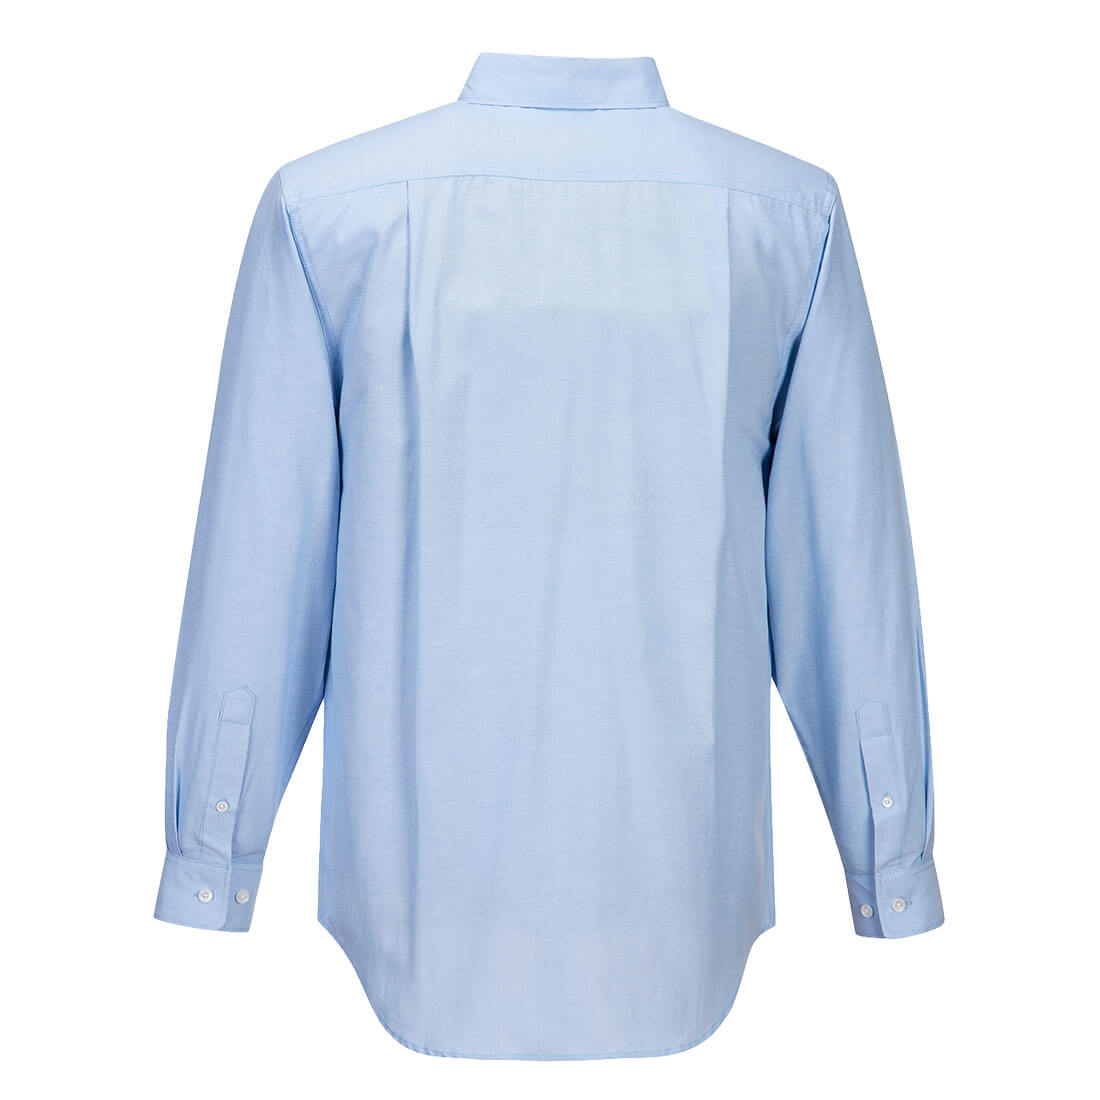 MS868 Chambray Shirt Long Sleeve